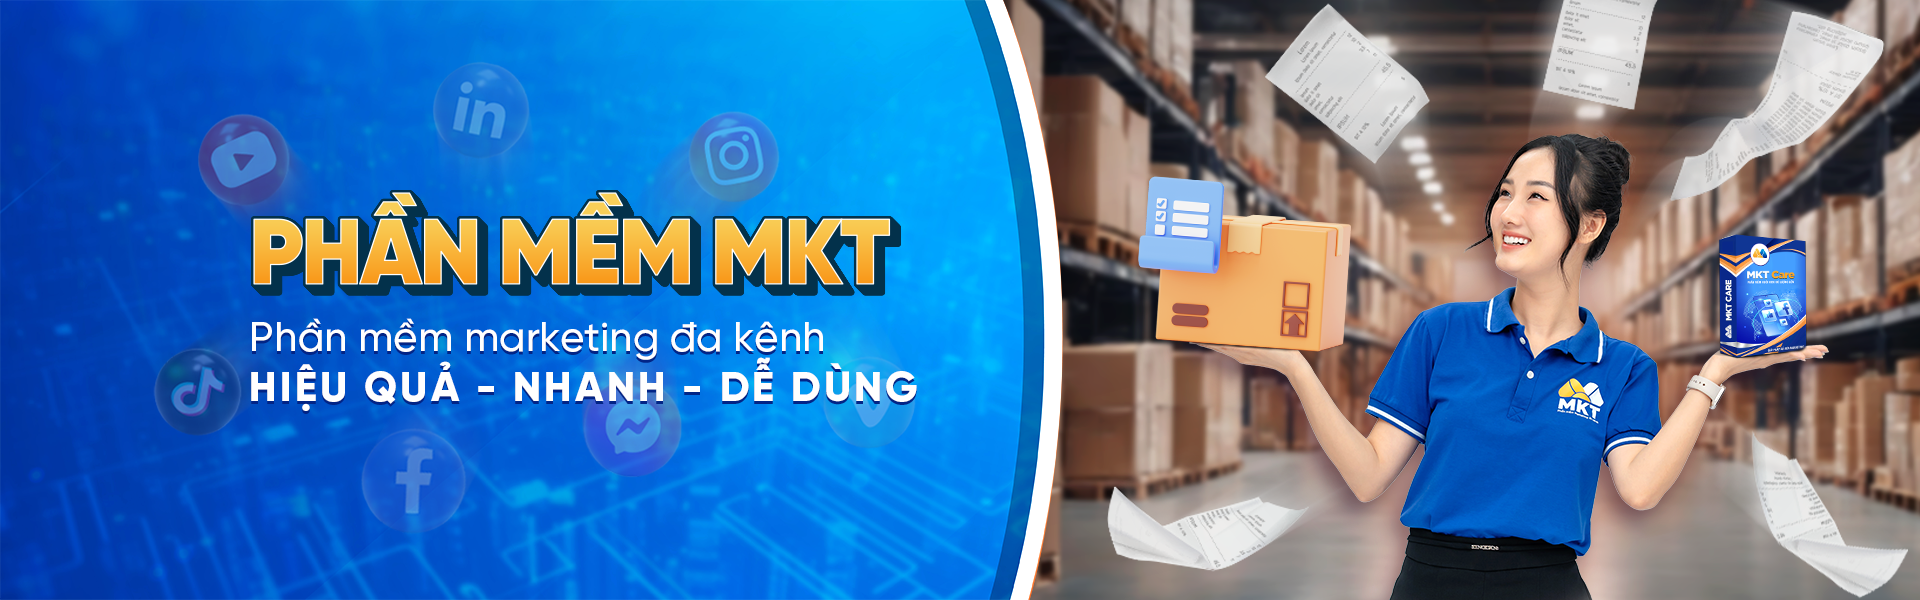 Phần mềm MKT - hệ thống marketing 0 đồng